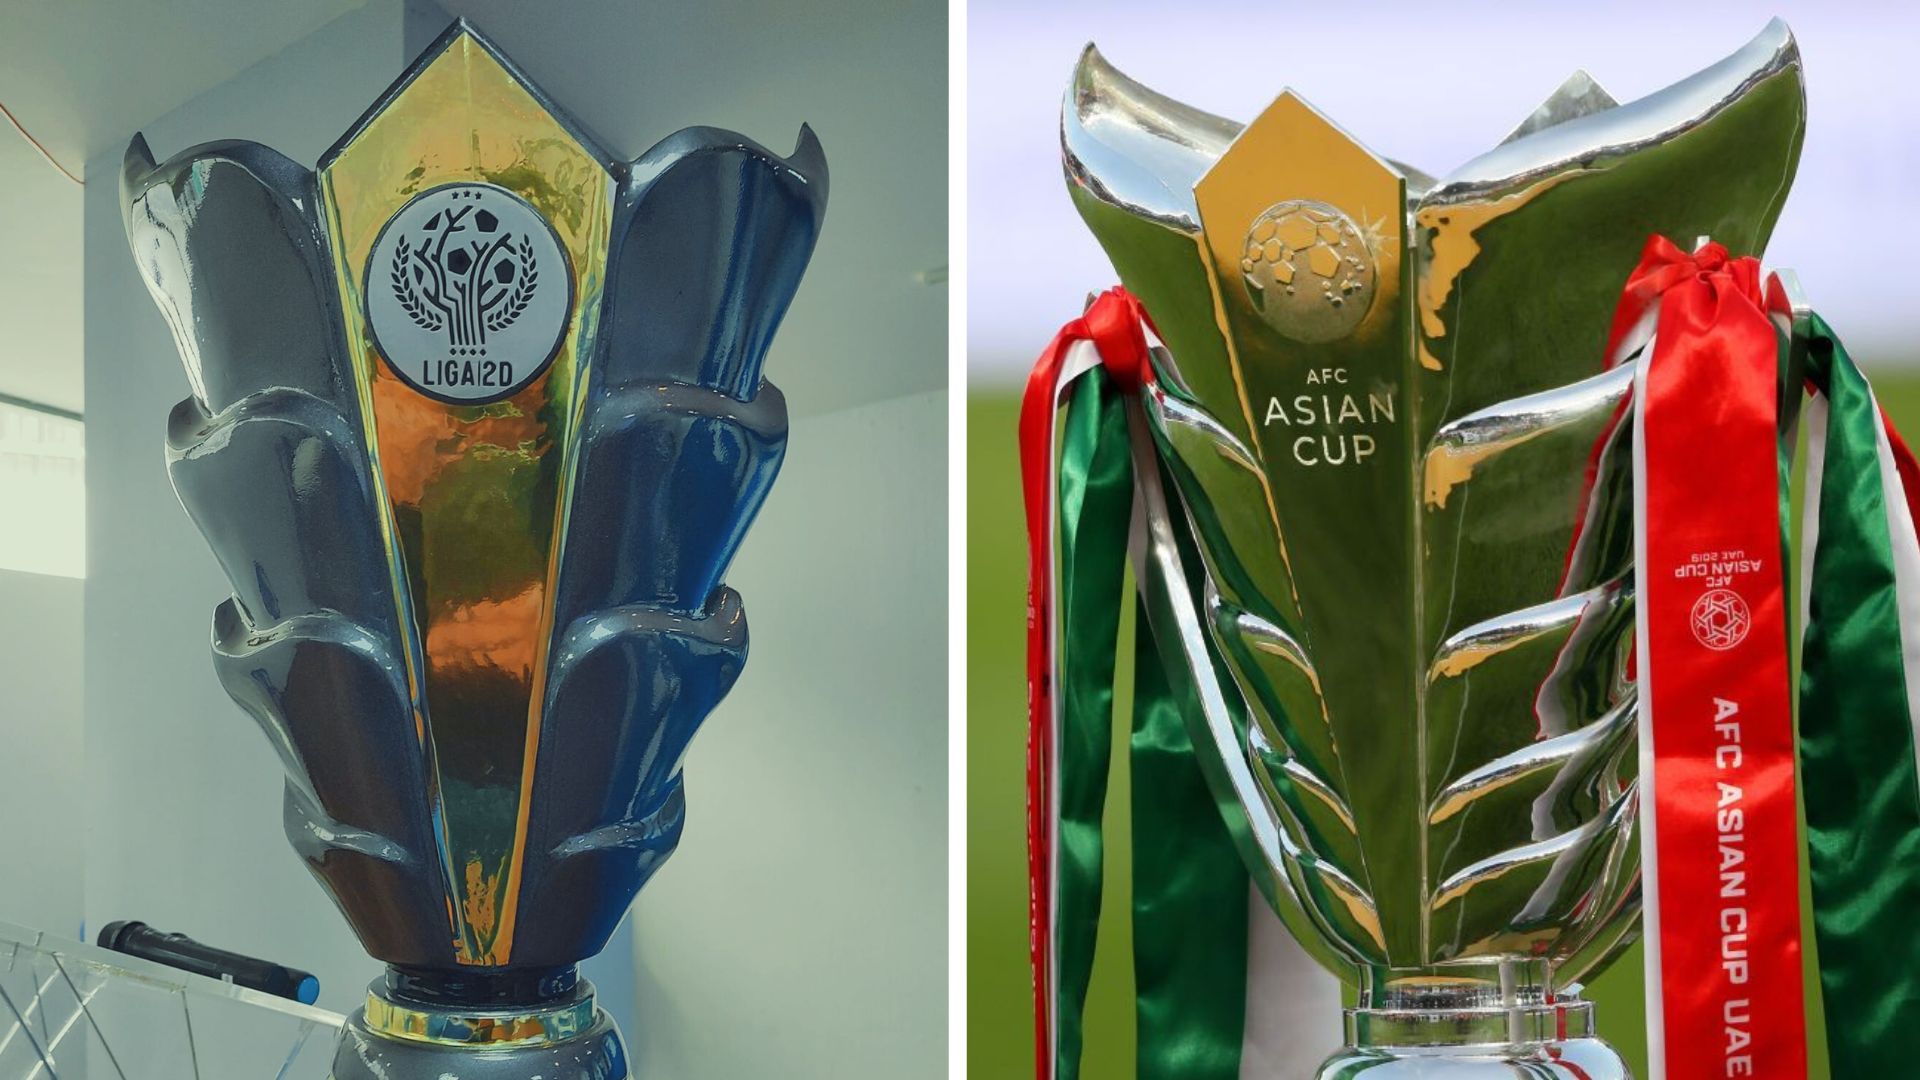 El trofeo de la Segunda División al lado del que se le presenta al campeón de la Confederación Asiática de futbol en su torneo de naciones. (Foto Prensa Libre: RRSS)